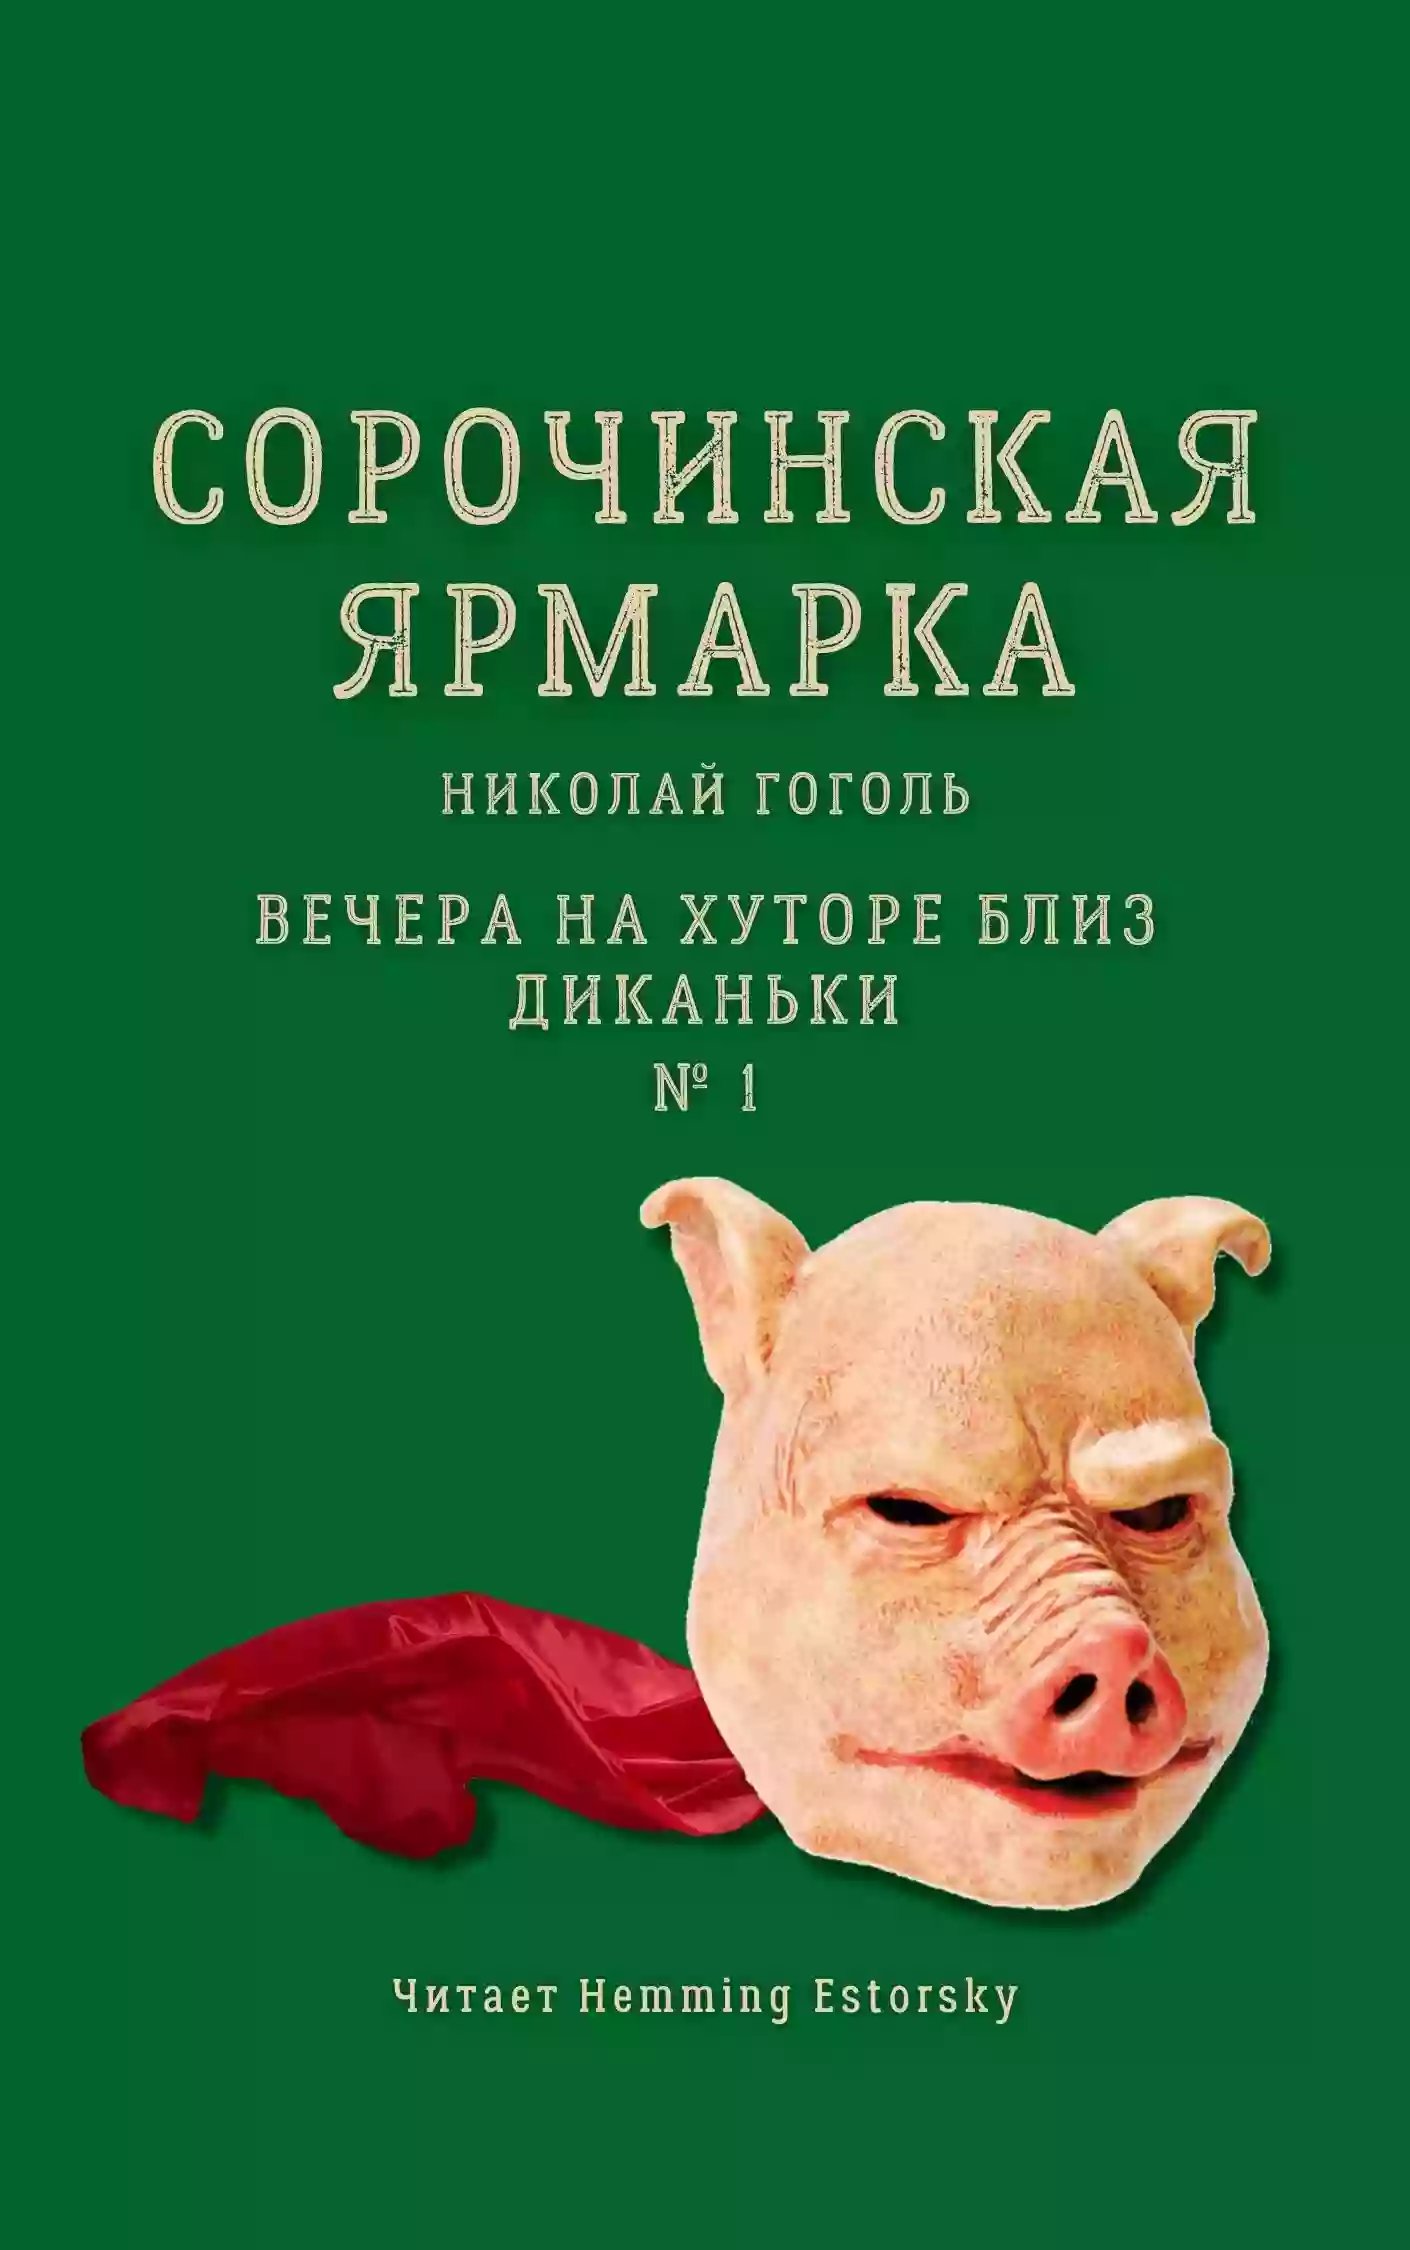 Сорочинская ярмарка - обложка книги